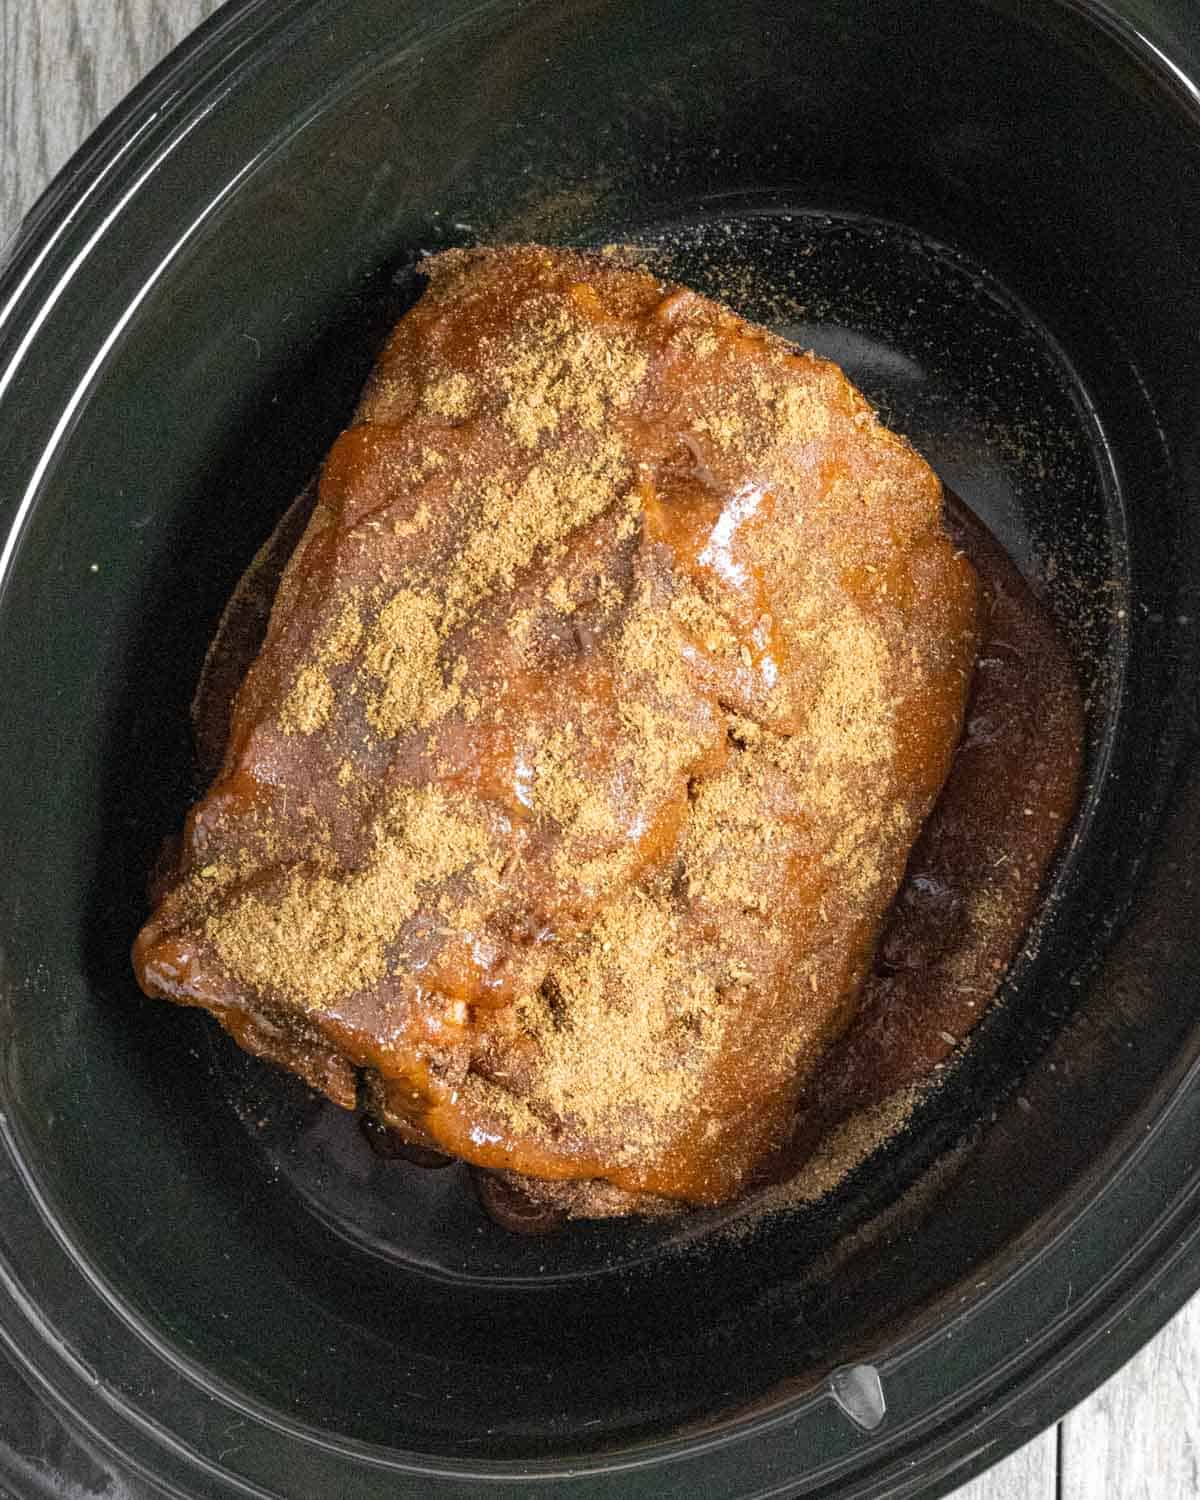 Browned pork shoulder roast set into the crock pot sprinkled with additional rub.